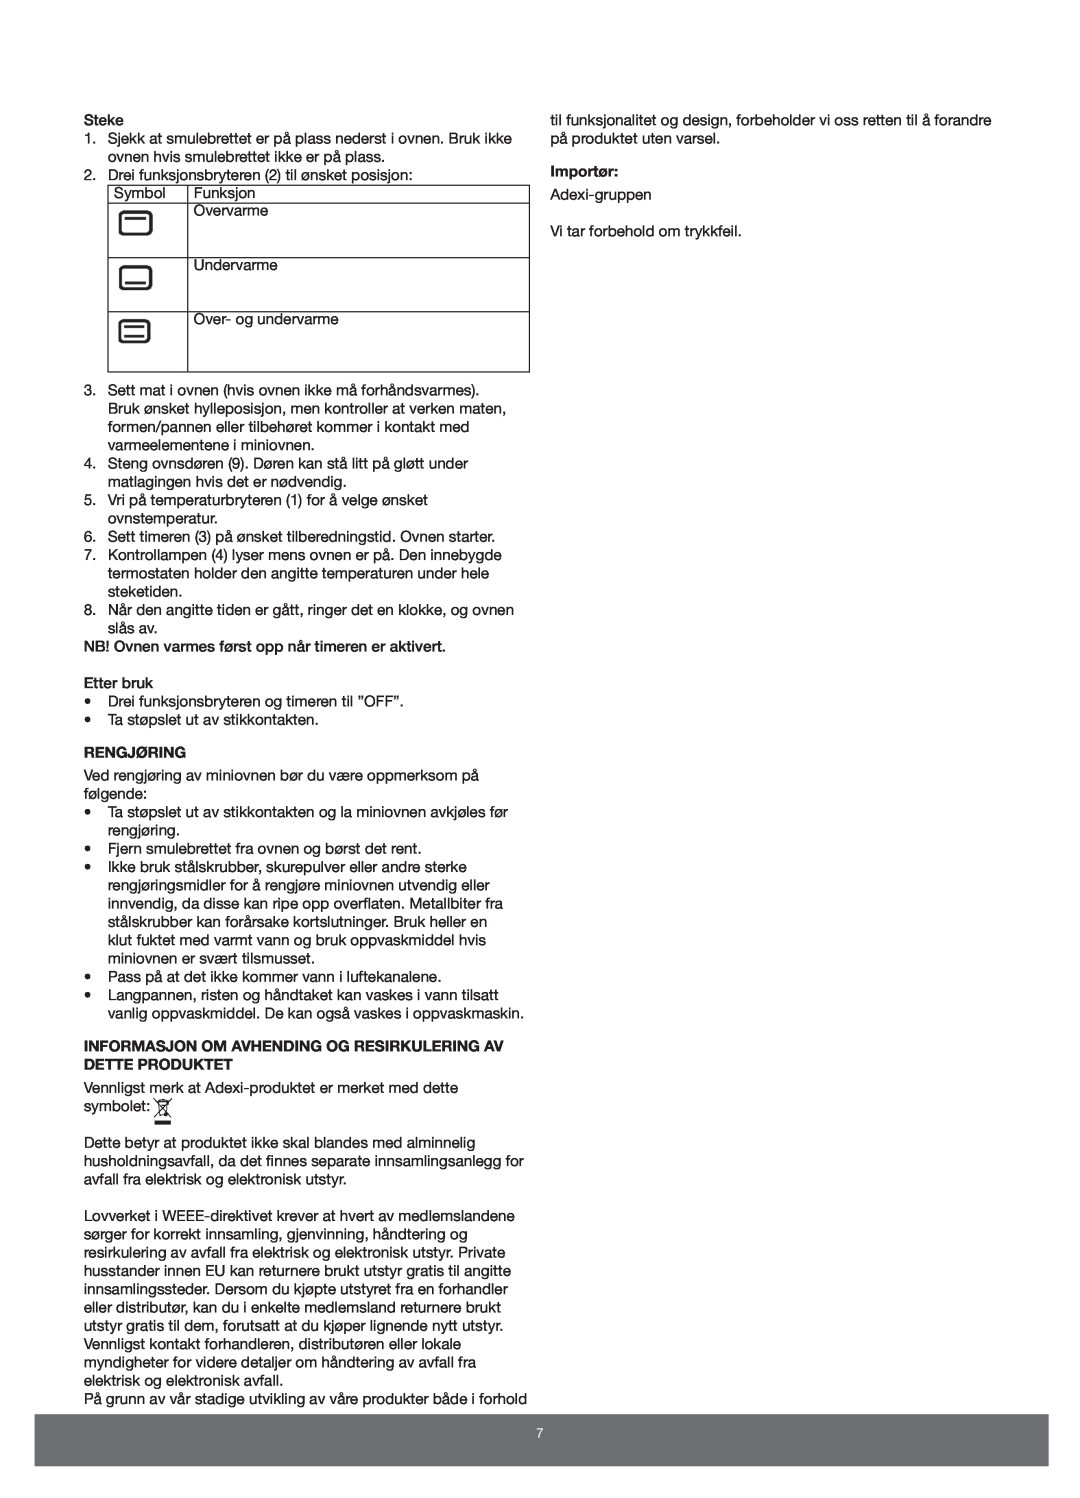 Melissa 651-007 manual Rengjøring, Informasjon Om Avhending Og Resirkulering Av Dette Produktet, Importør 